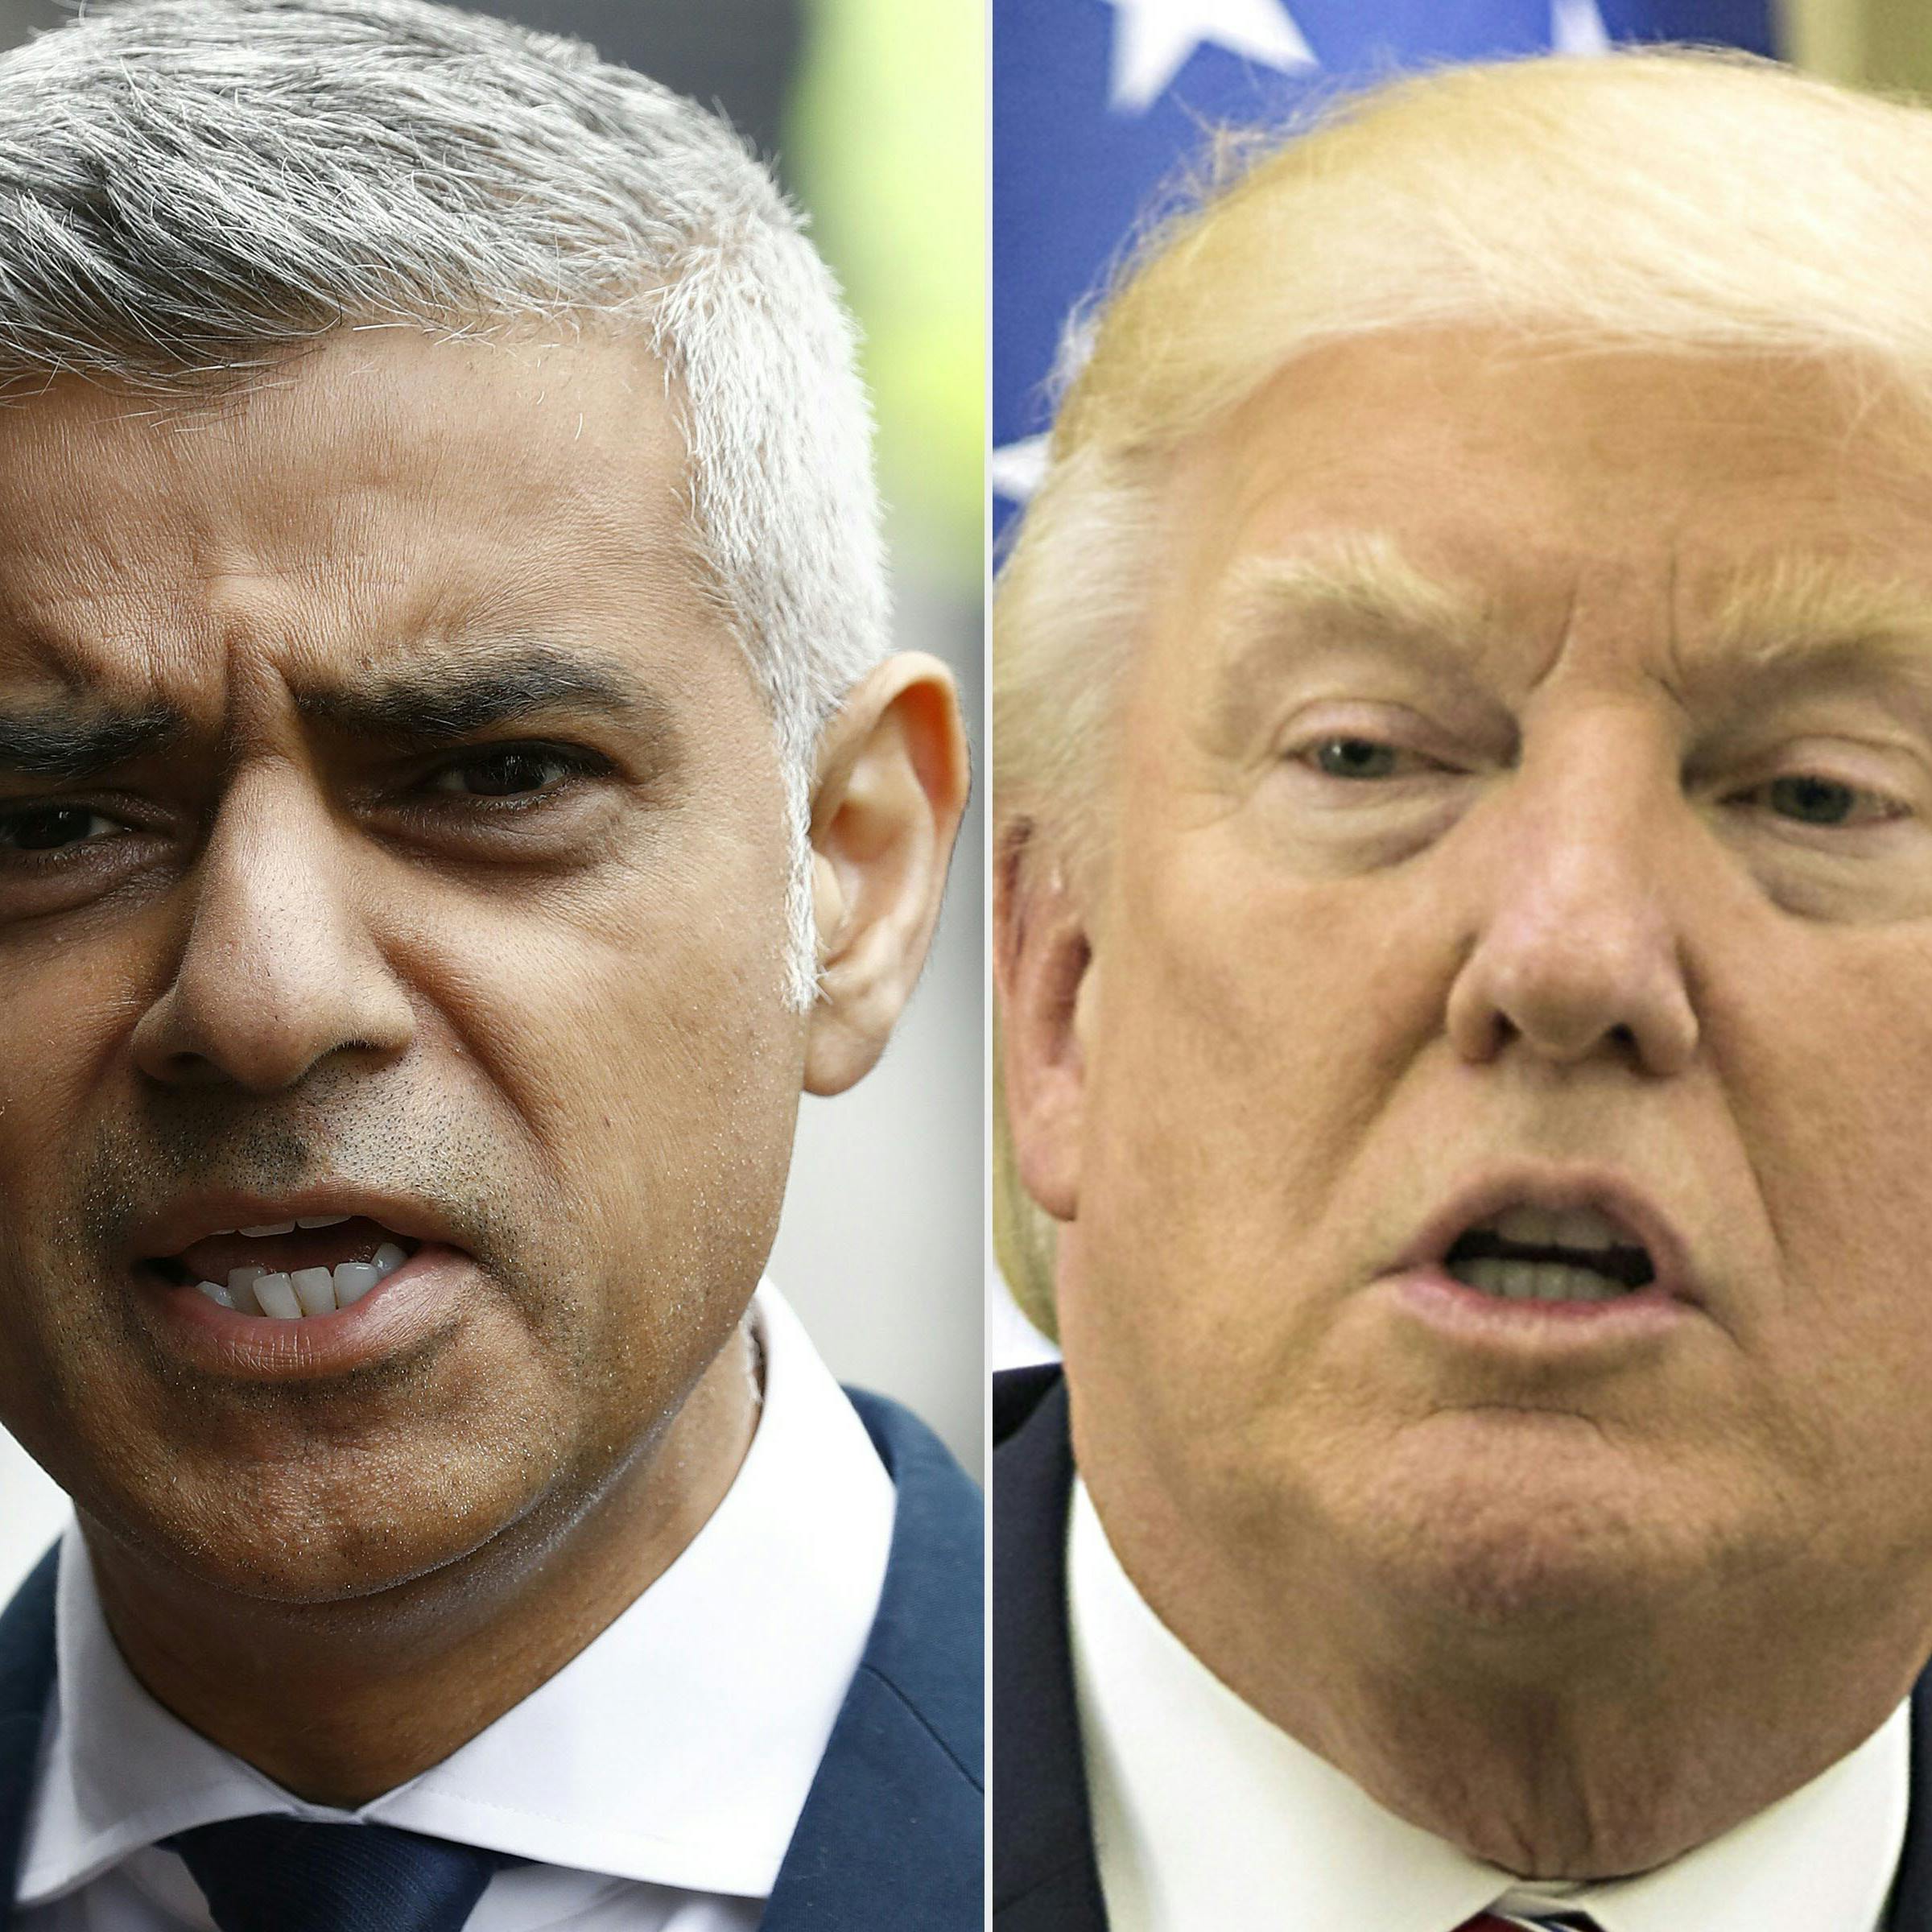 Burgemeester Londen wil geen staatsbezoek Trump